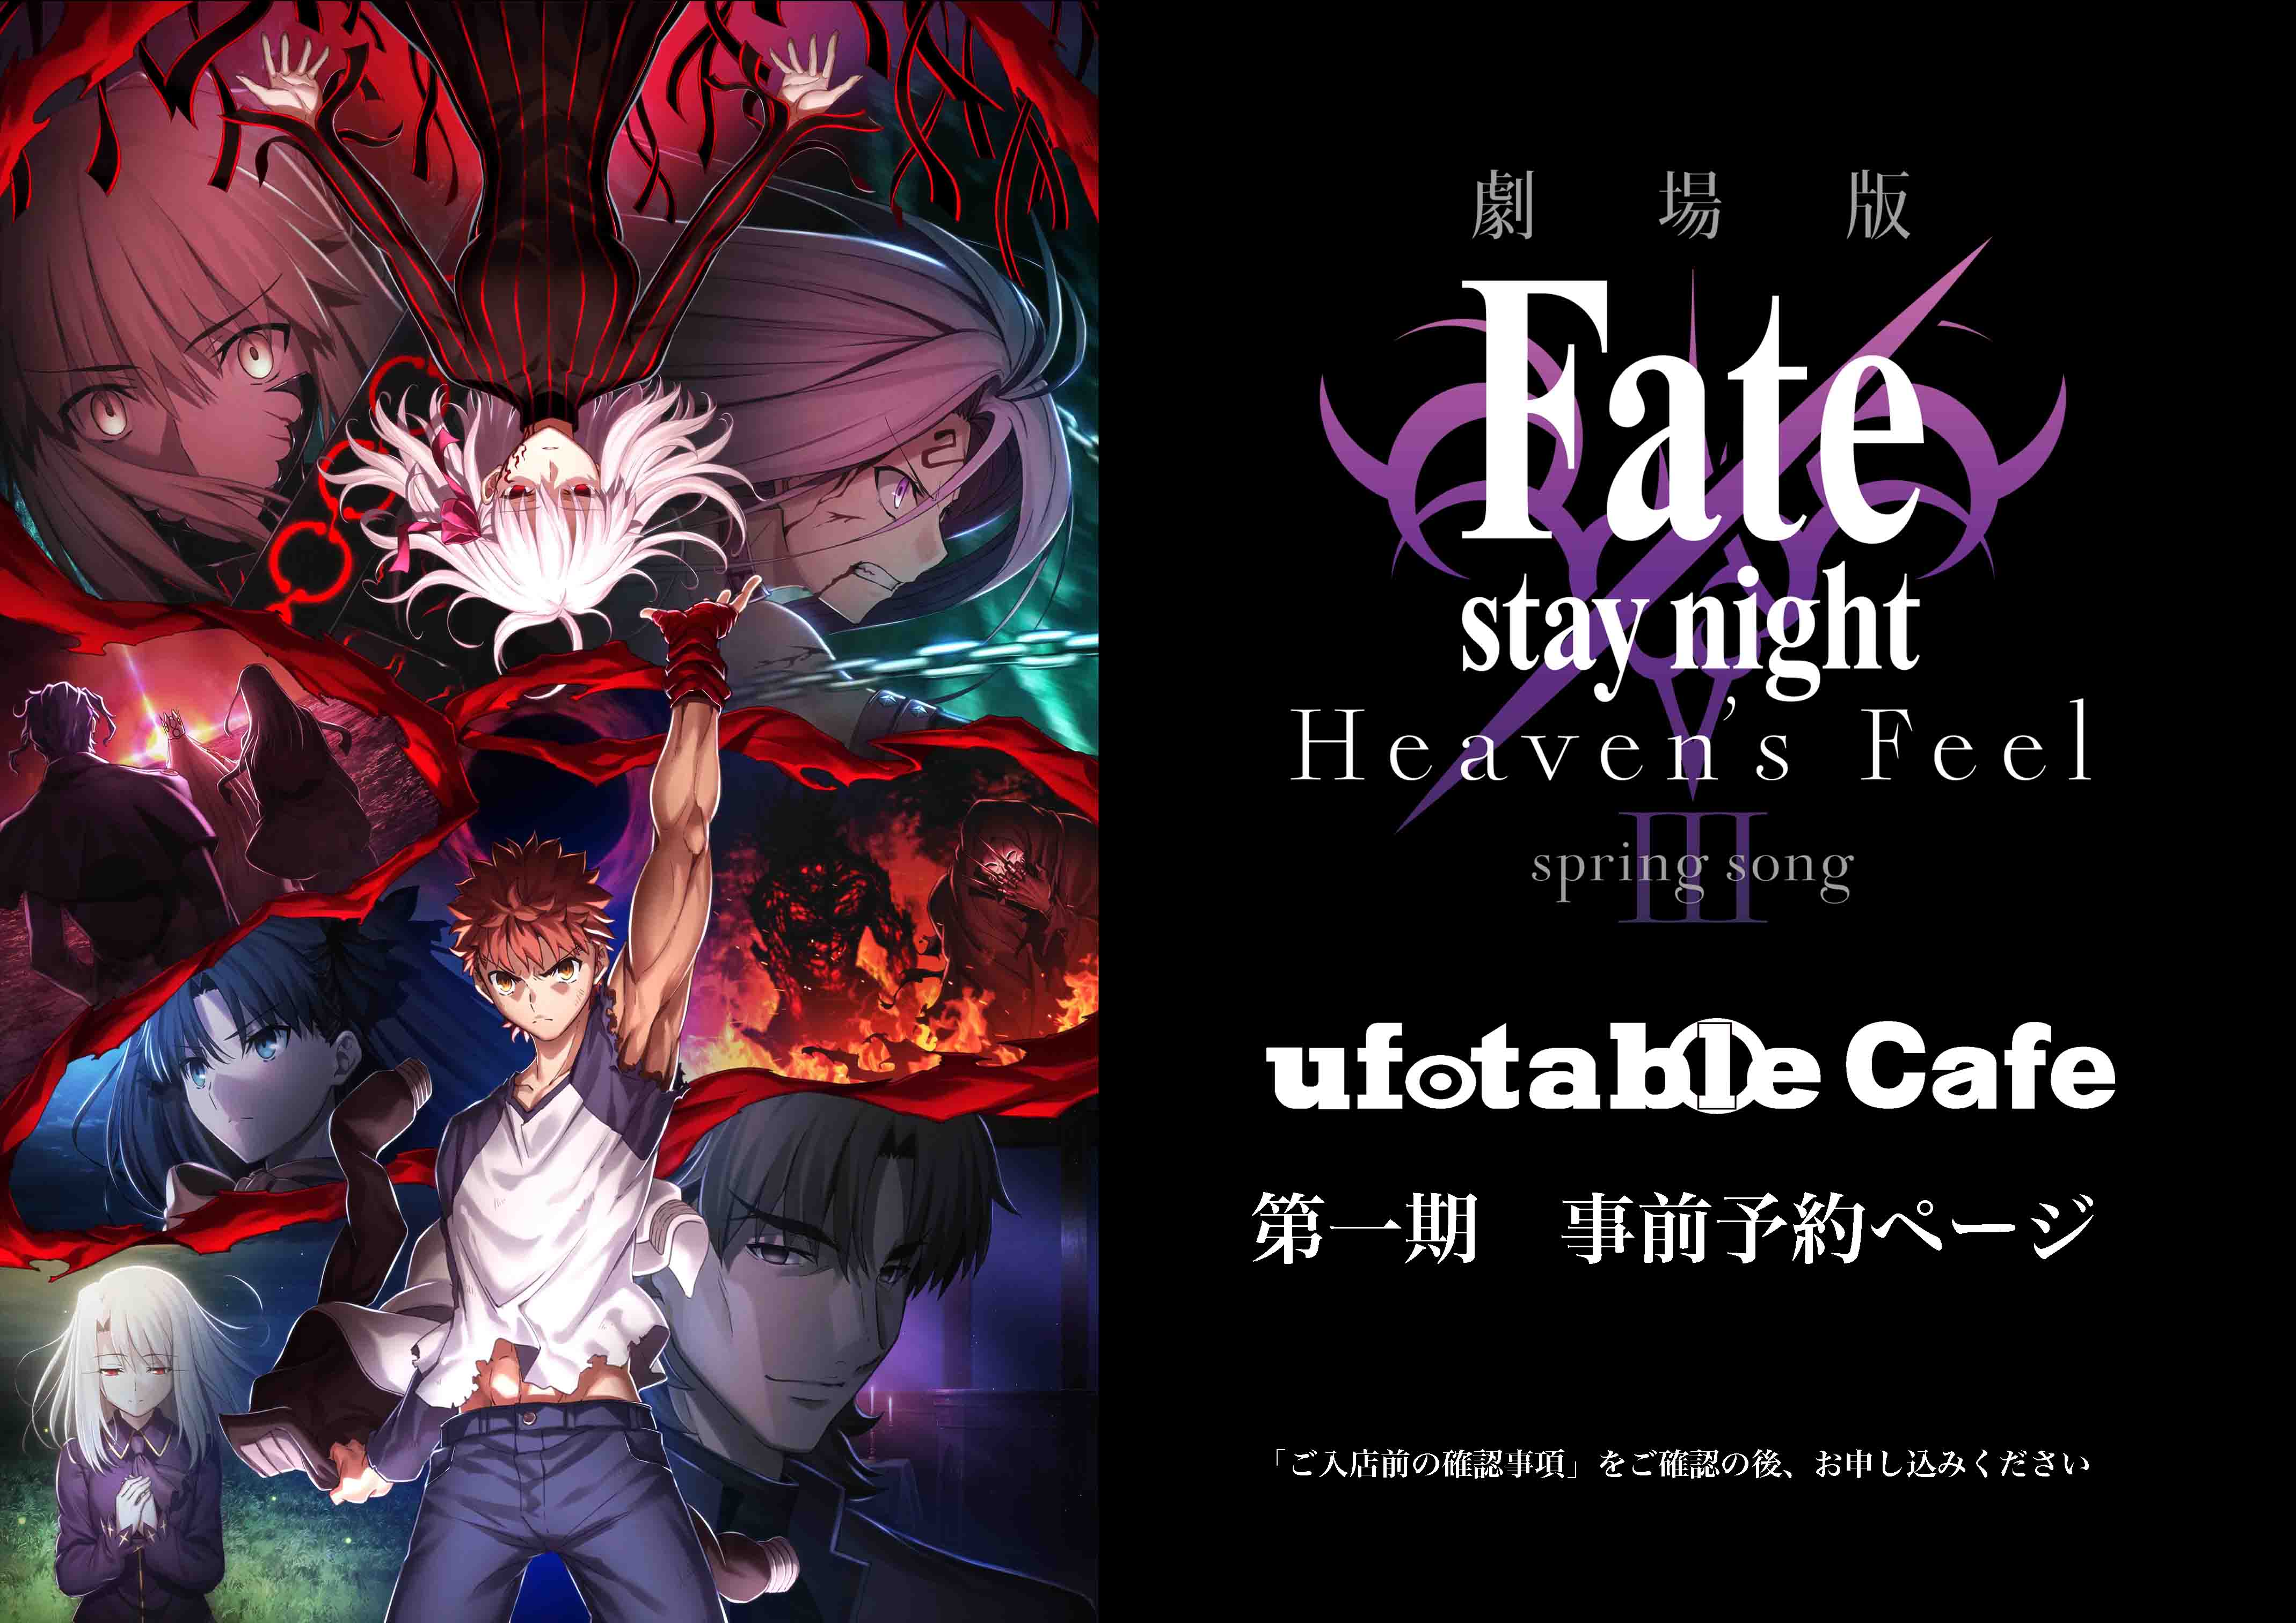 名古屋 Ufotablecafe Nagoya 8 23 日 劇場版 Fate Stay Night Heaven S Feel Spring Songコラボレーションカフェのチケット情報 予約 購入 販売 ライヴポケット